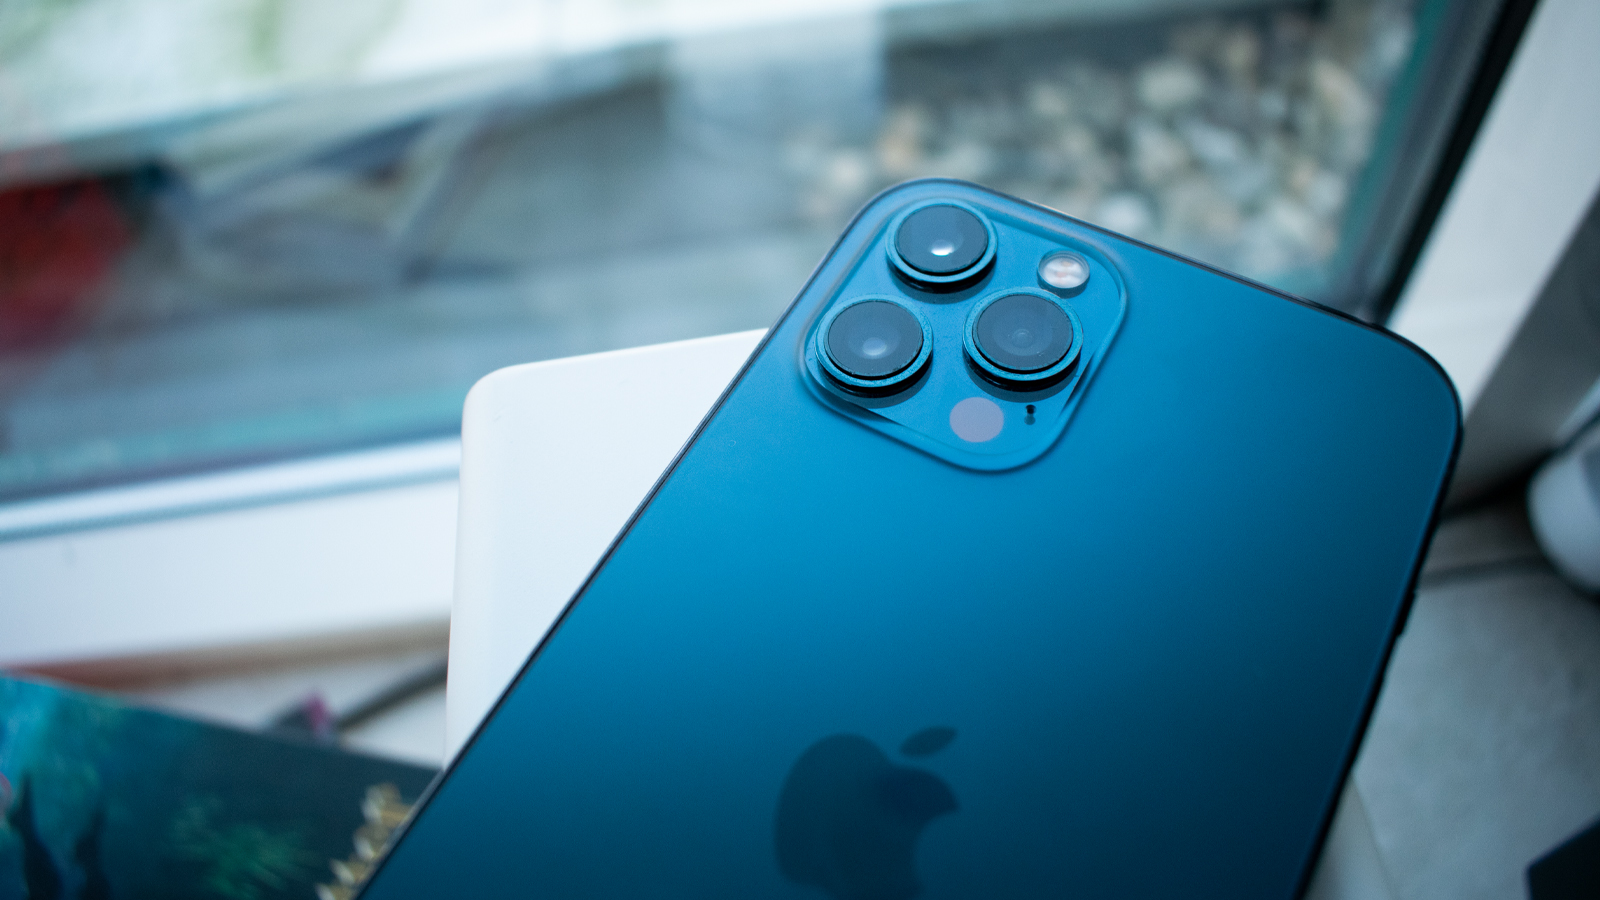 الأخبار 15 ديسمبر 2020 ، يوفر iOS 14.3 وظيفة كاميرا مثيرة للاهتمام لـ iPhone 12 Pro (Max)